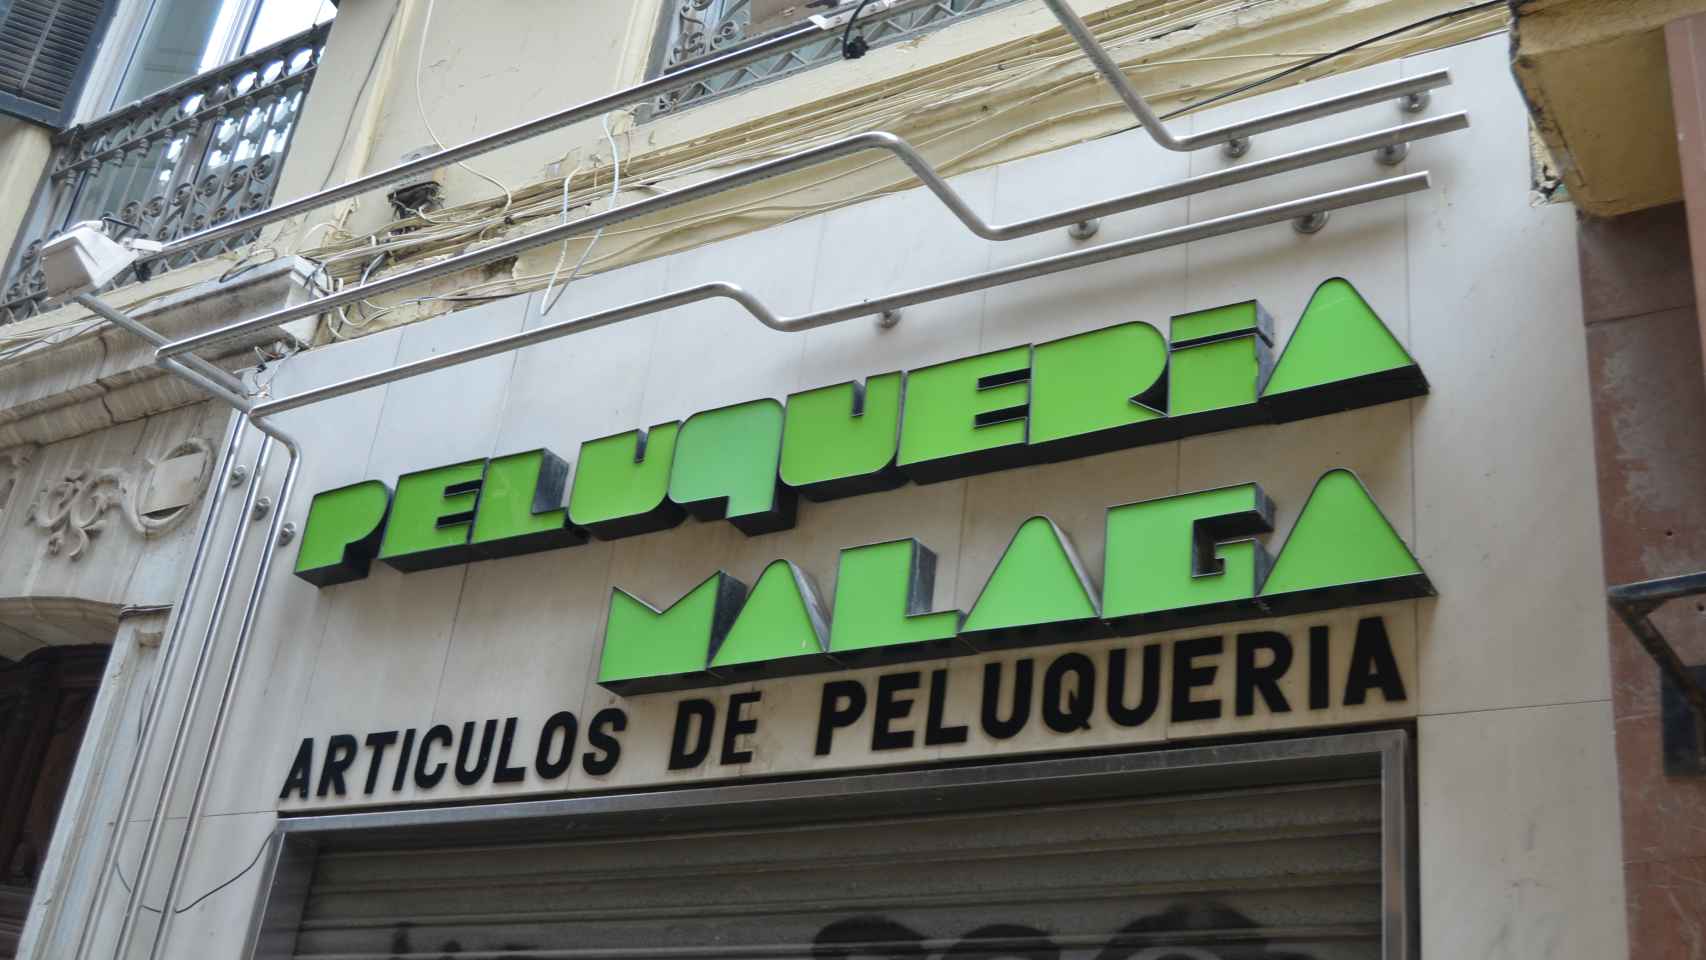 Los rótulos clásicos de negocios tradicionales de Málaga rescatados del olvido